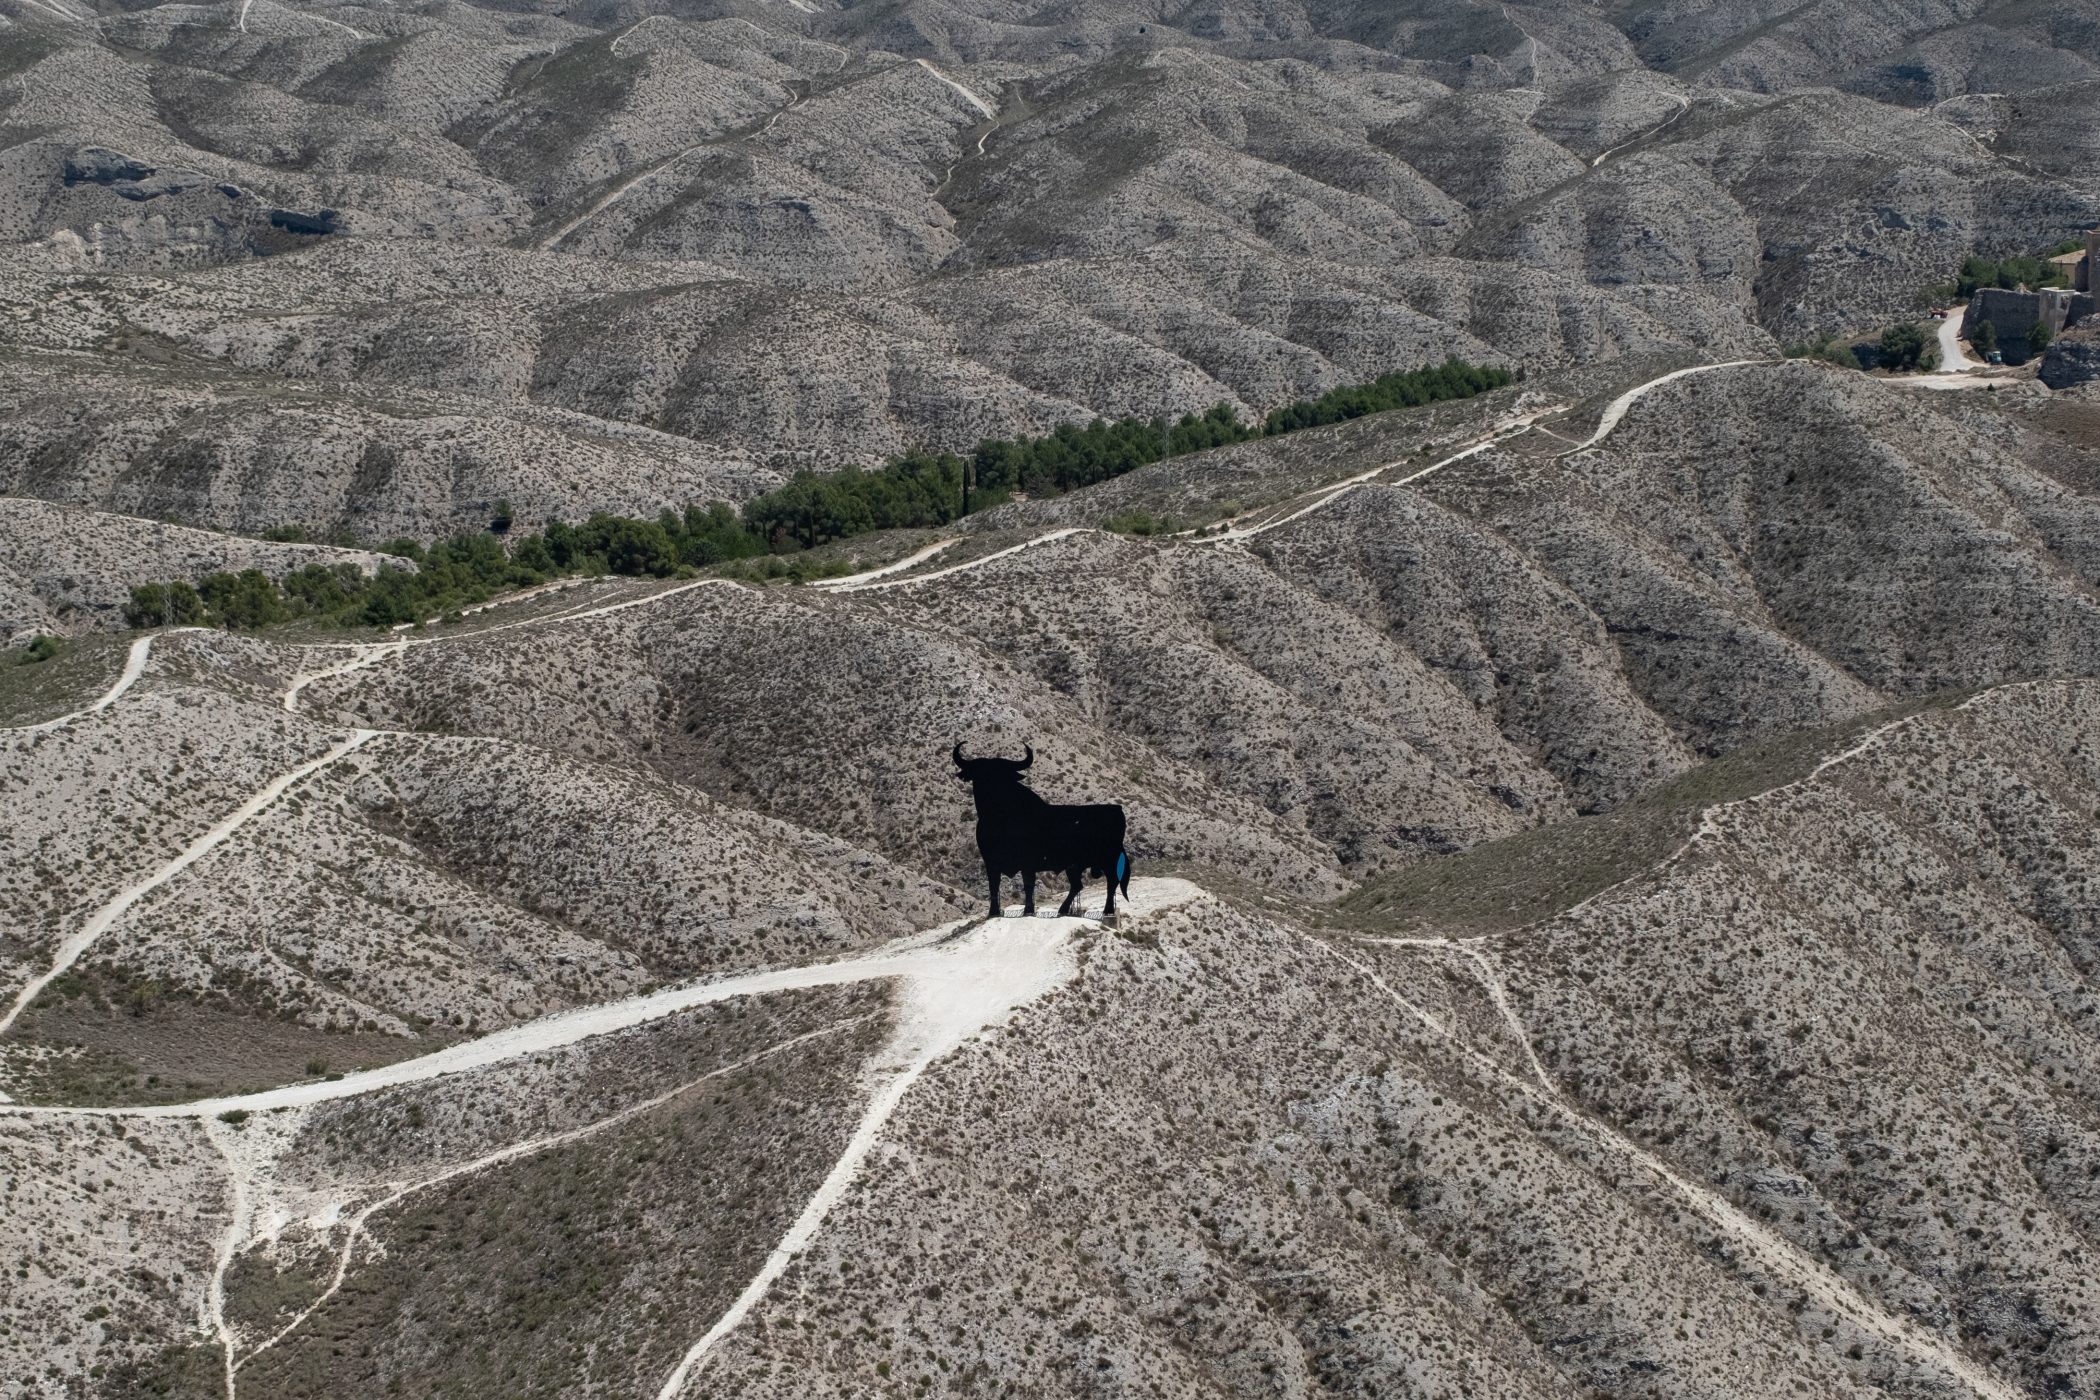 Un 'toro de Osborne' en medio del desierto, Alfajarín, Zaragoza, Aragón, España. ©Greenpeace/Pedro Armestre